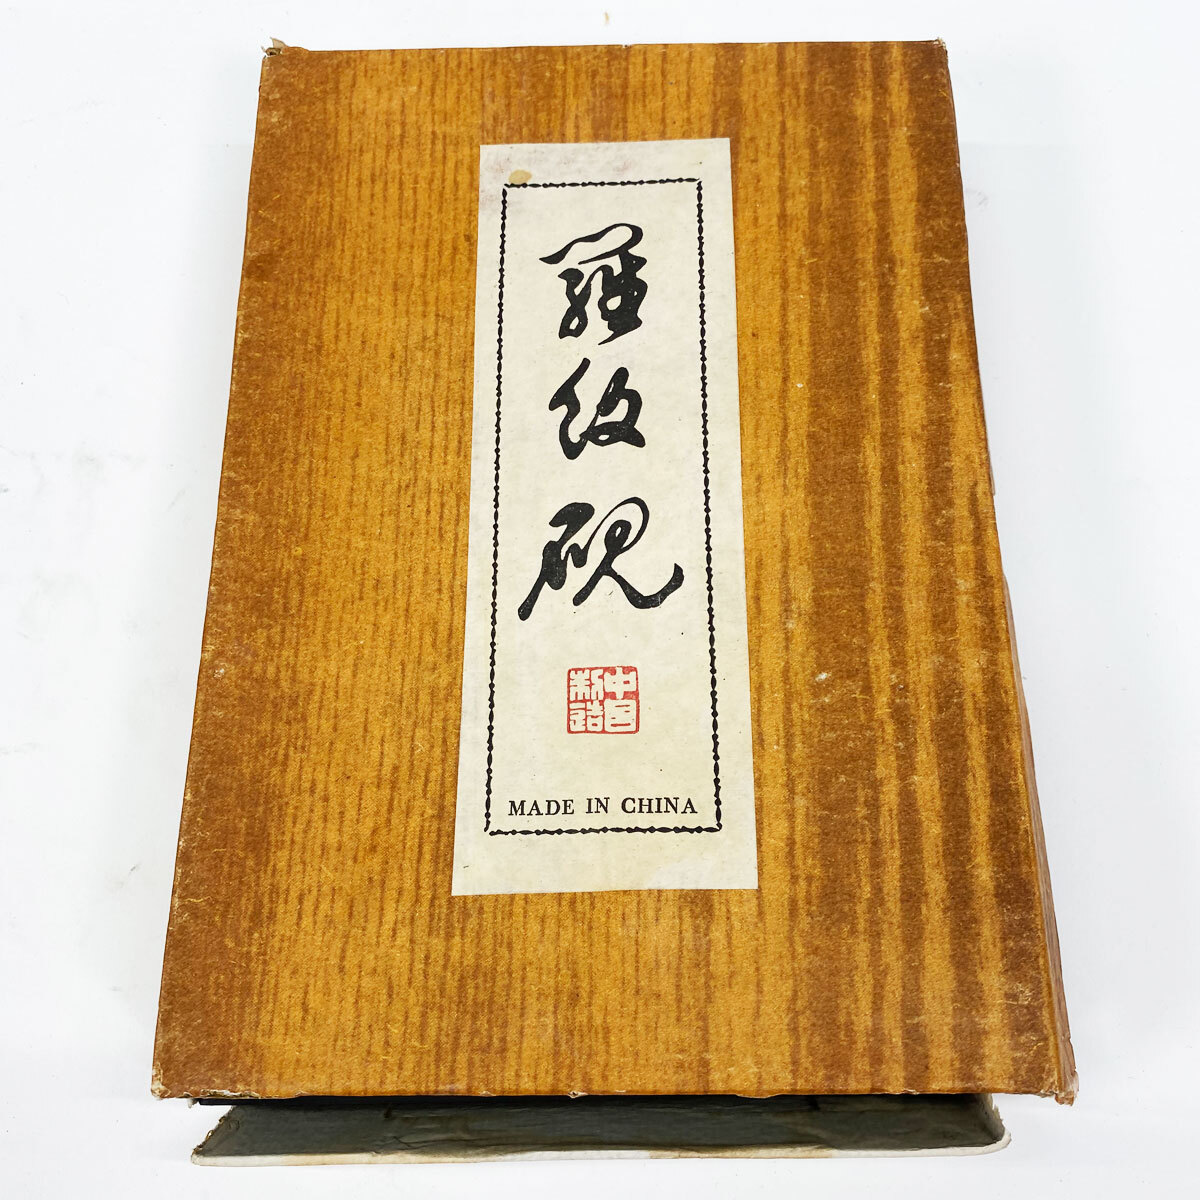 硯 すずり 羅紋硯 1490g 約21cm 中国製 書道 書道用具 現状品 中古品 nn0101 096